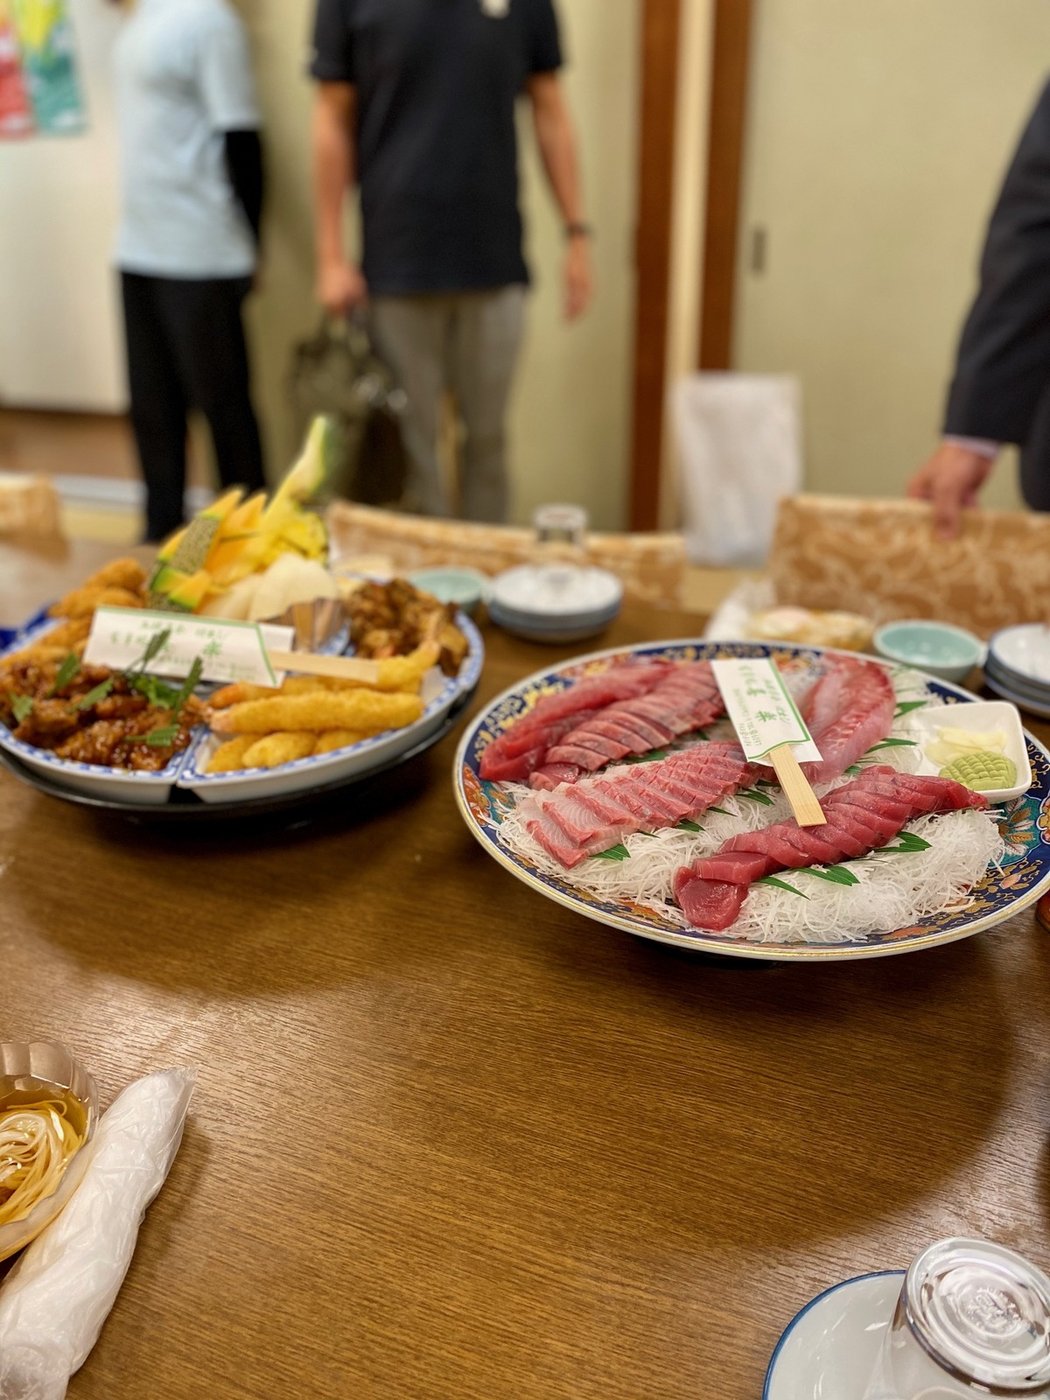 Takhle jedí čeští rychlostní kanoisté v japonském městě Susaki, kde se finálně připravují na olympijské závody v Tokiu.